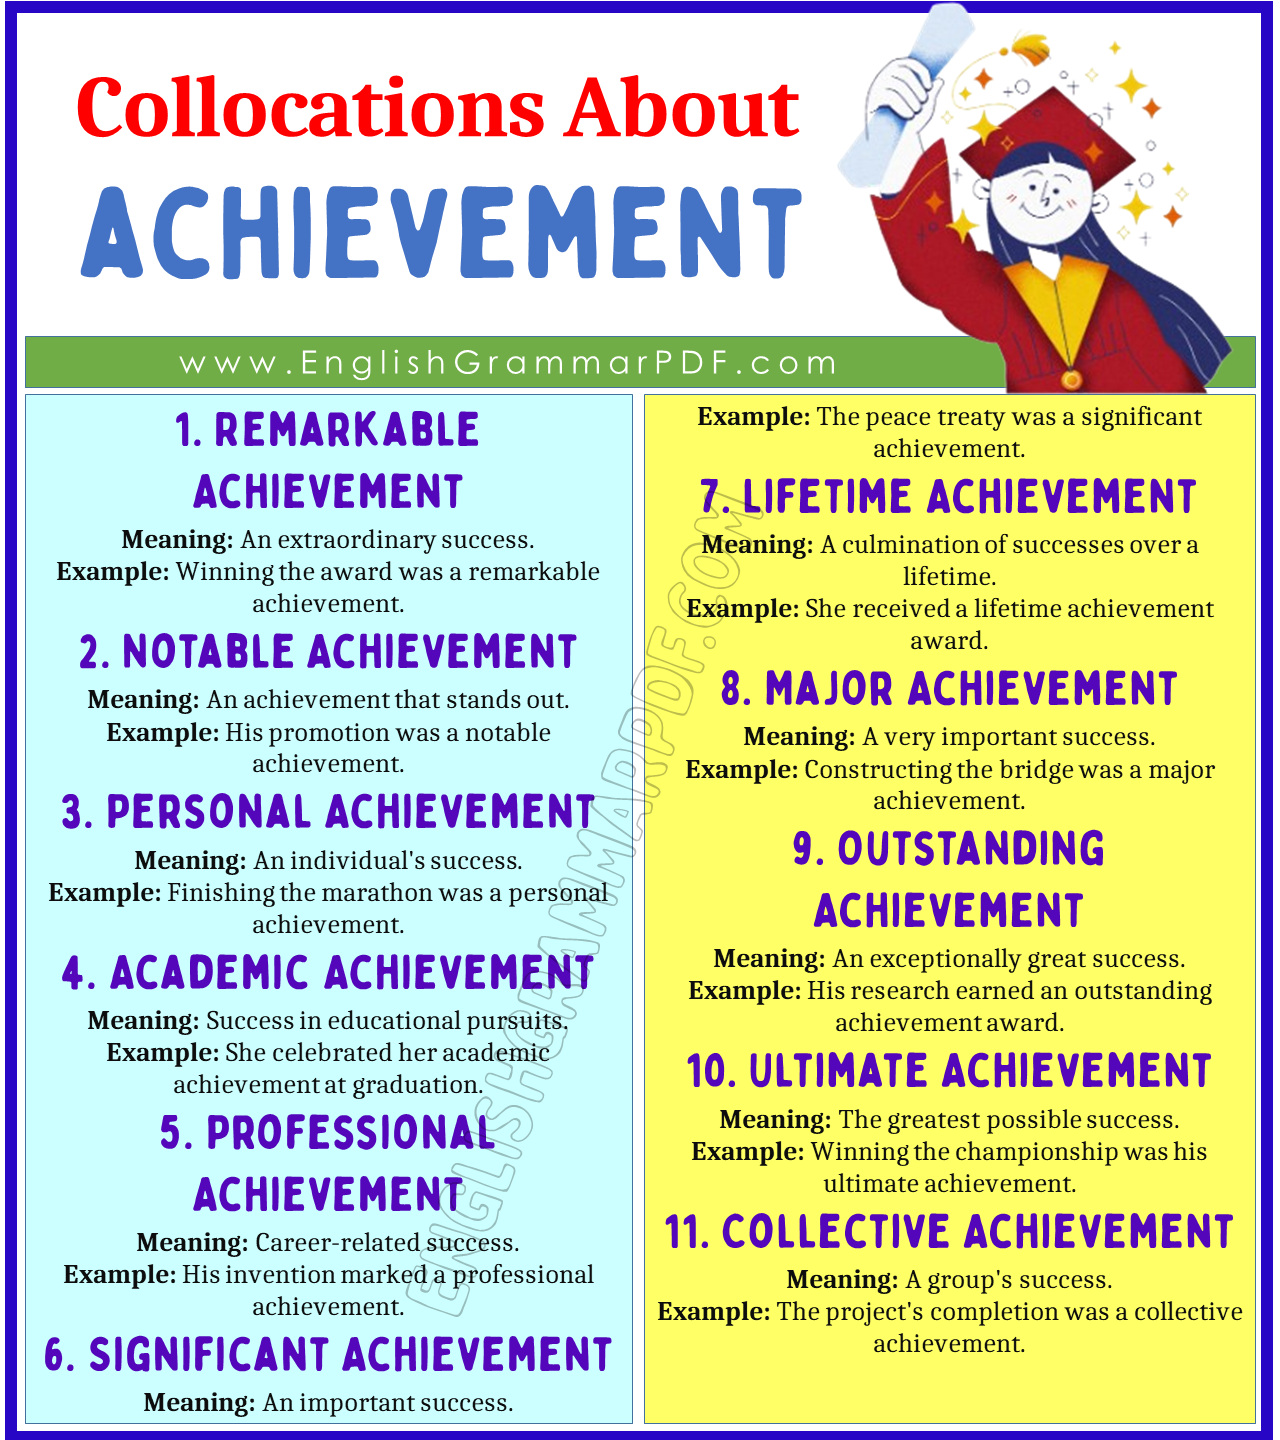 Collocations about Achievement